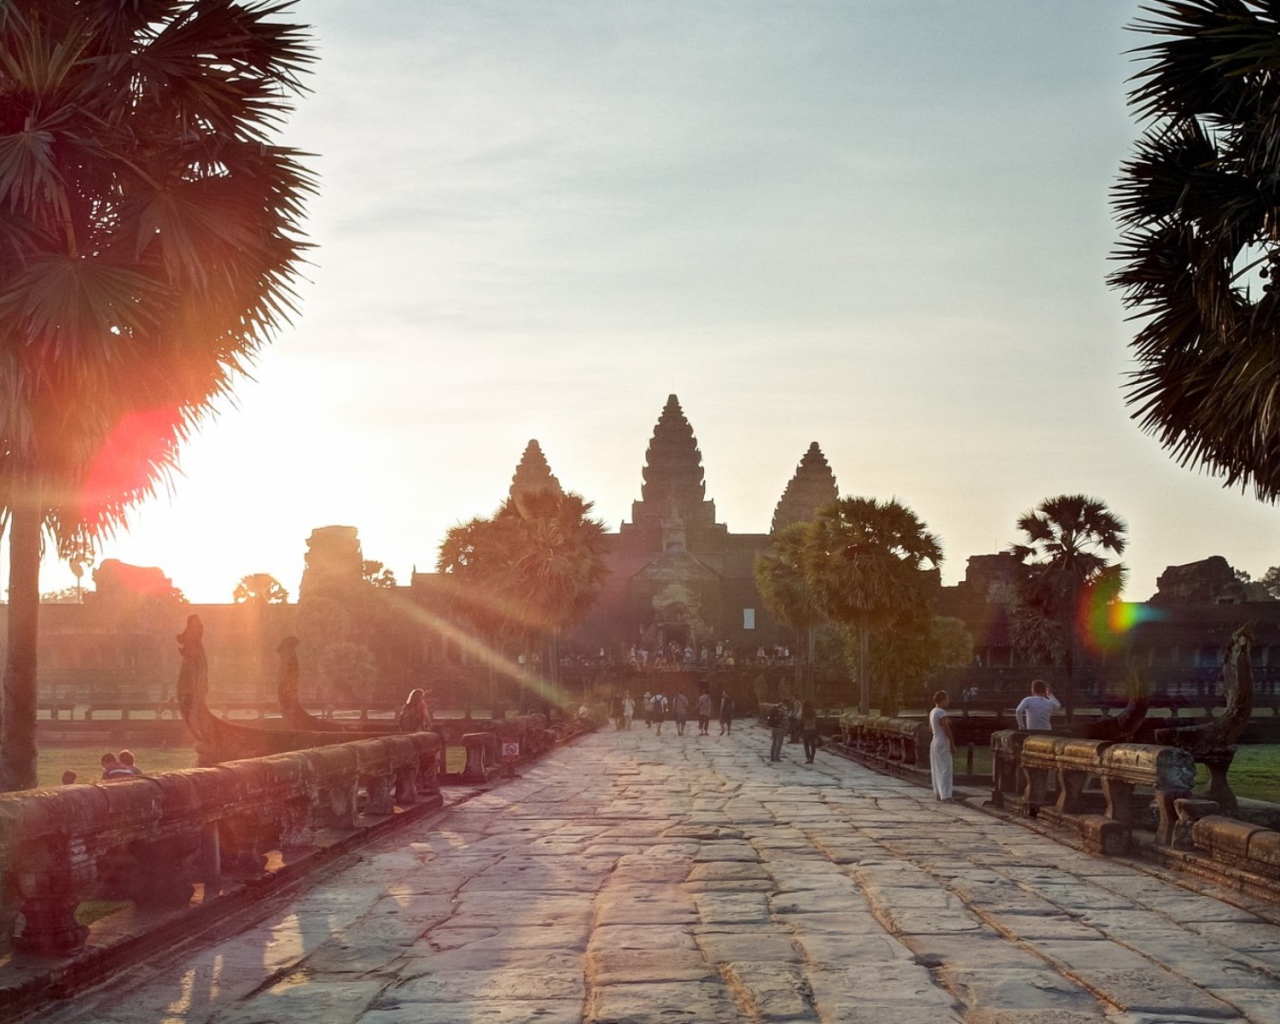 Walk at sunset at Angkor Wat in Cambodia